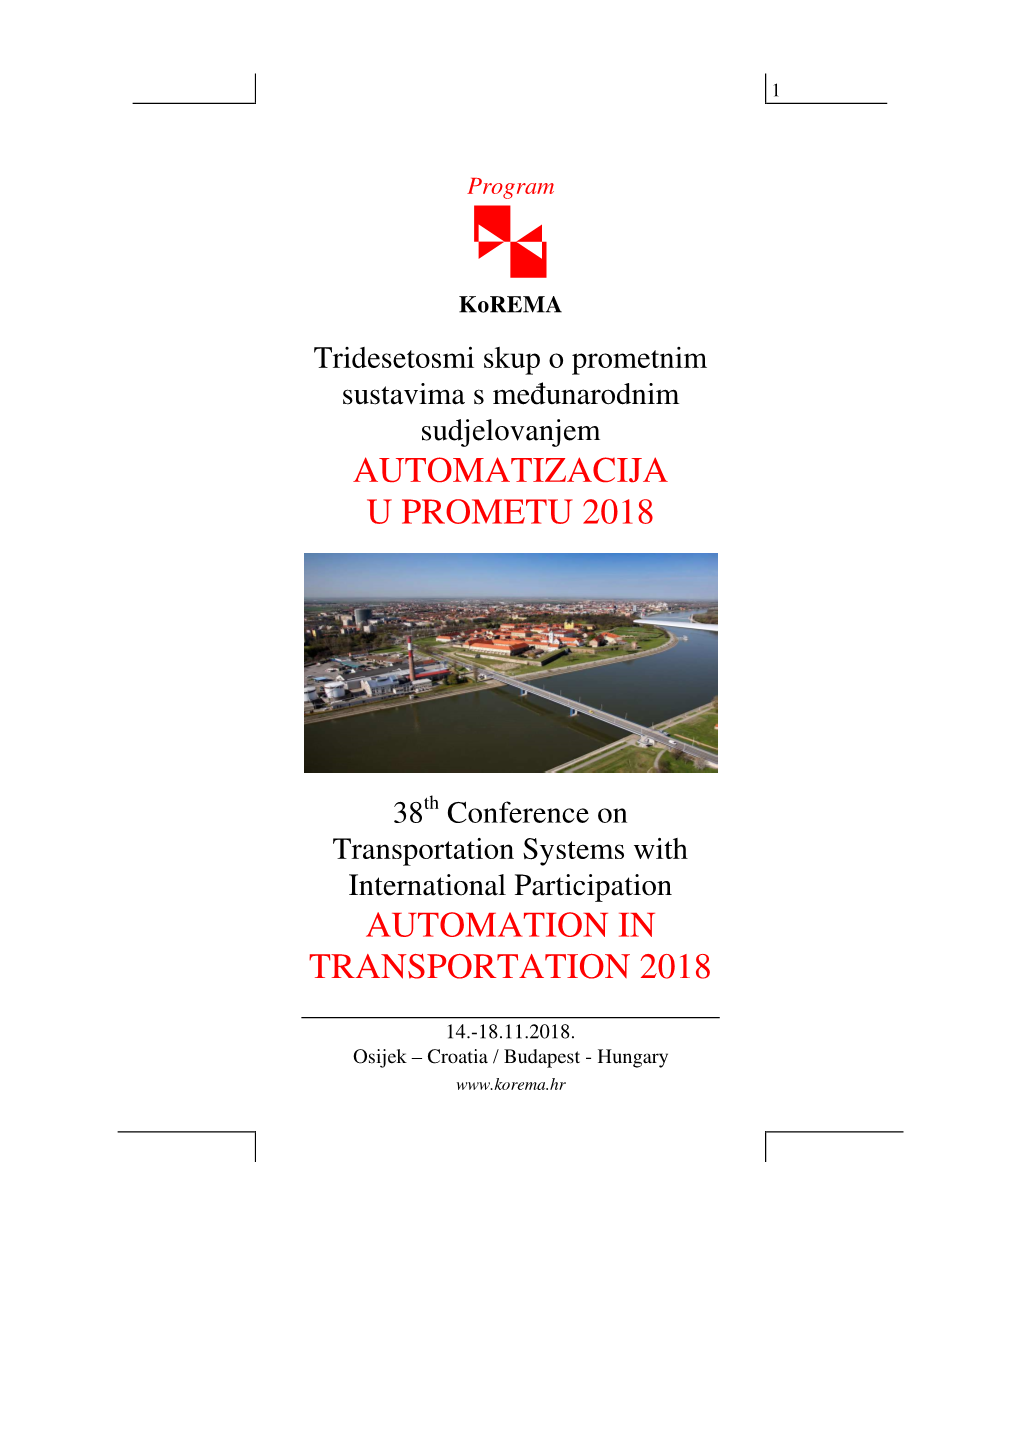 Program Automatizacija U Prometu 2018